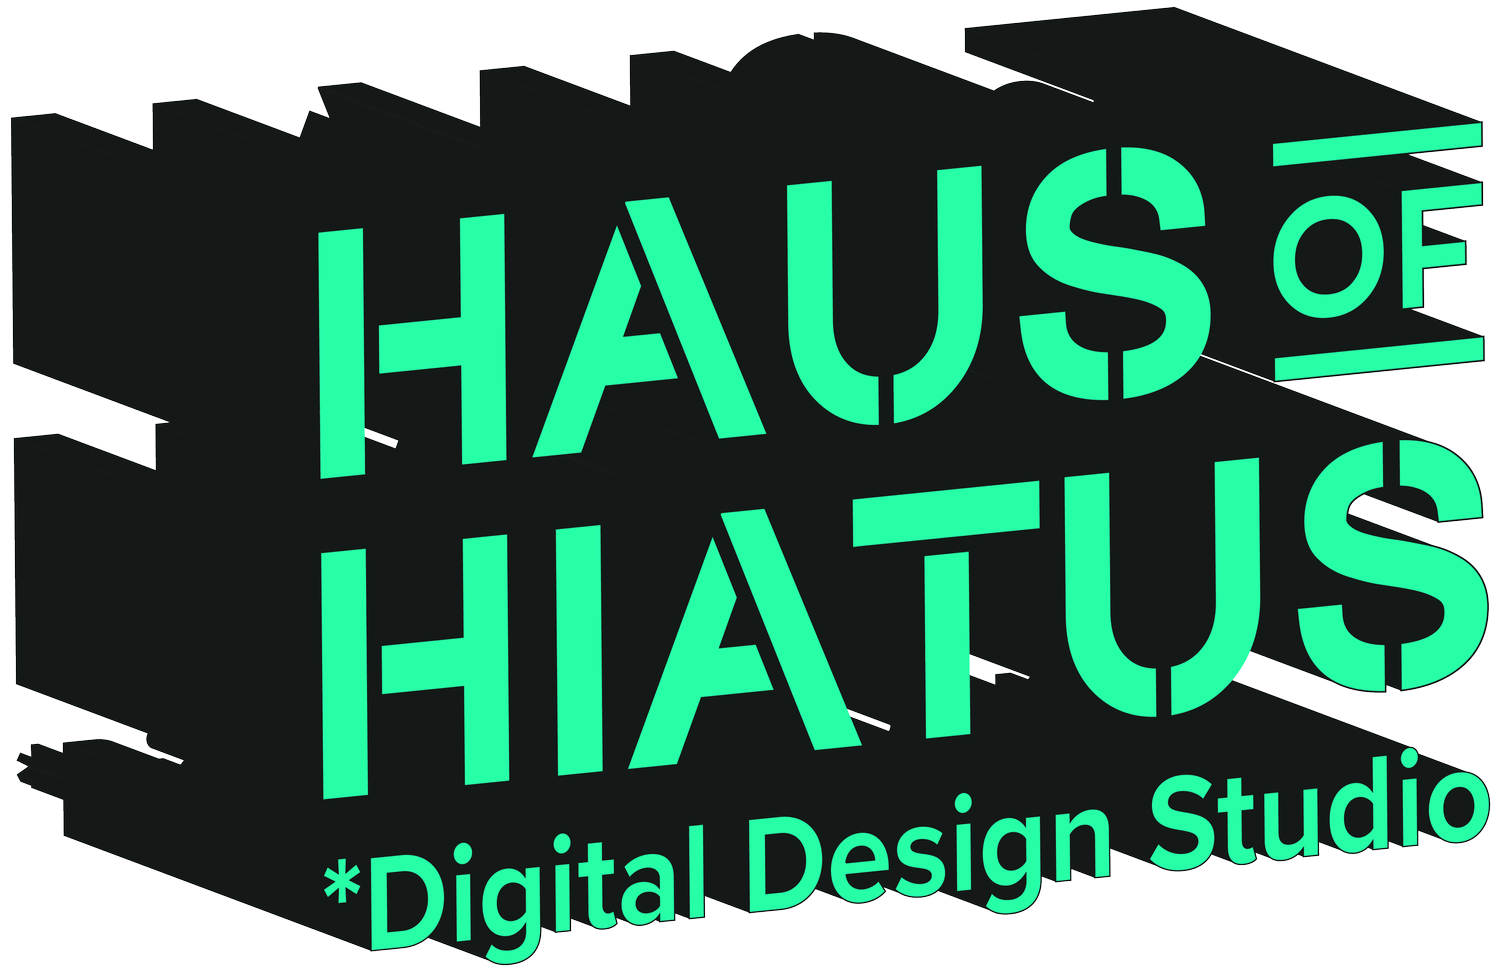 Haus of hiatus affordable digital design studio